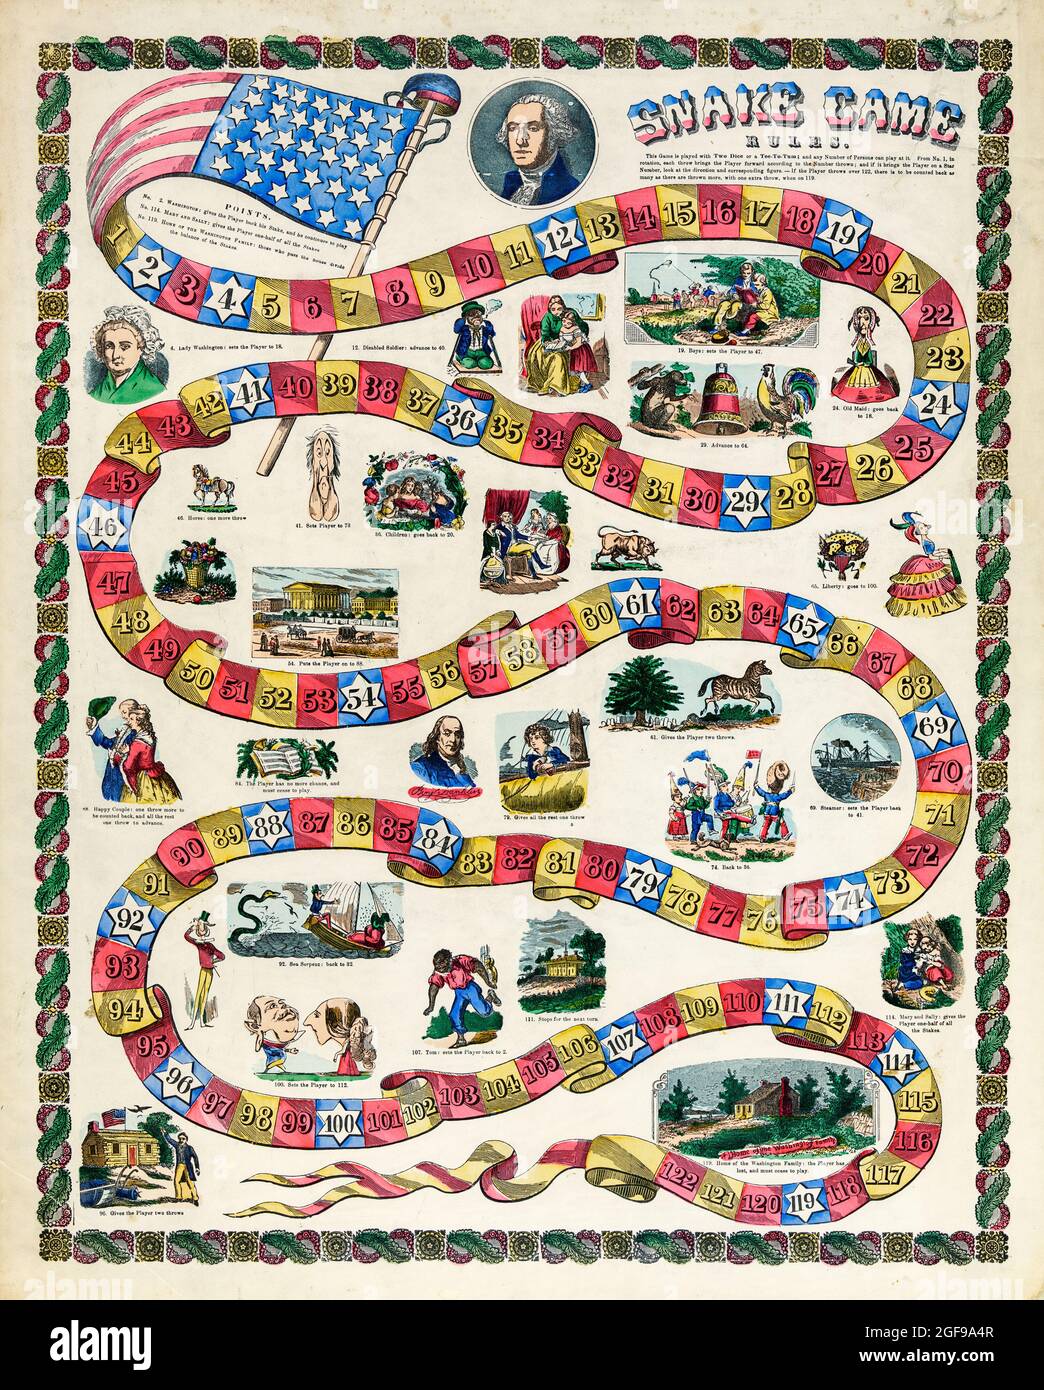 Stampa del tabellone di gioco Snake con George Washington. Datato 1840-1860. Foto Stock